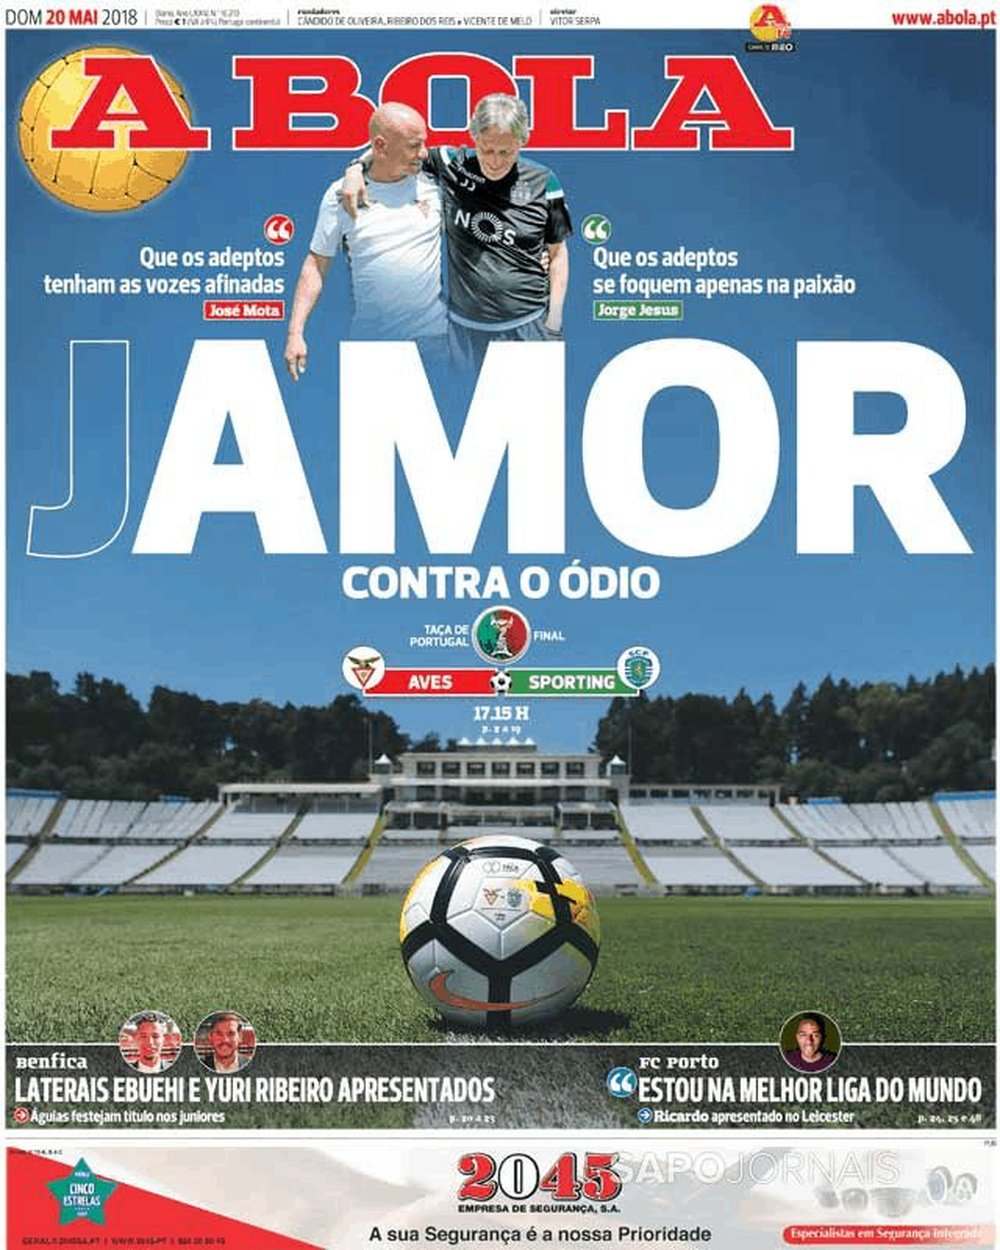 Capa do jornal 'A Bola' de 20 de maio de 2018. A Bola